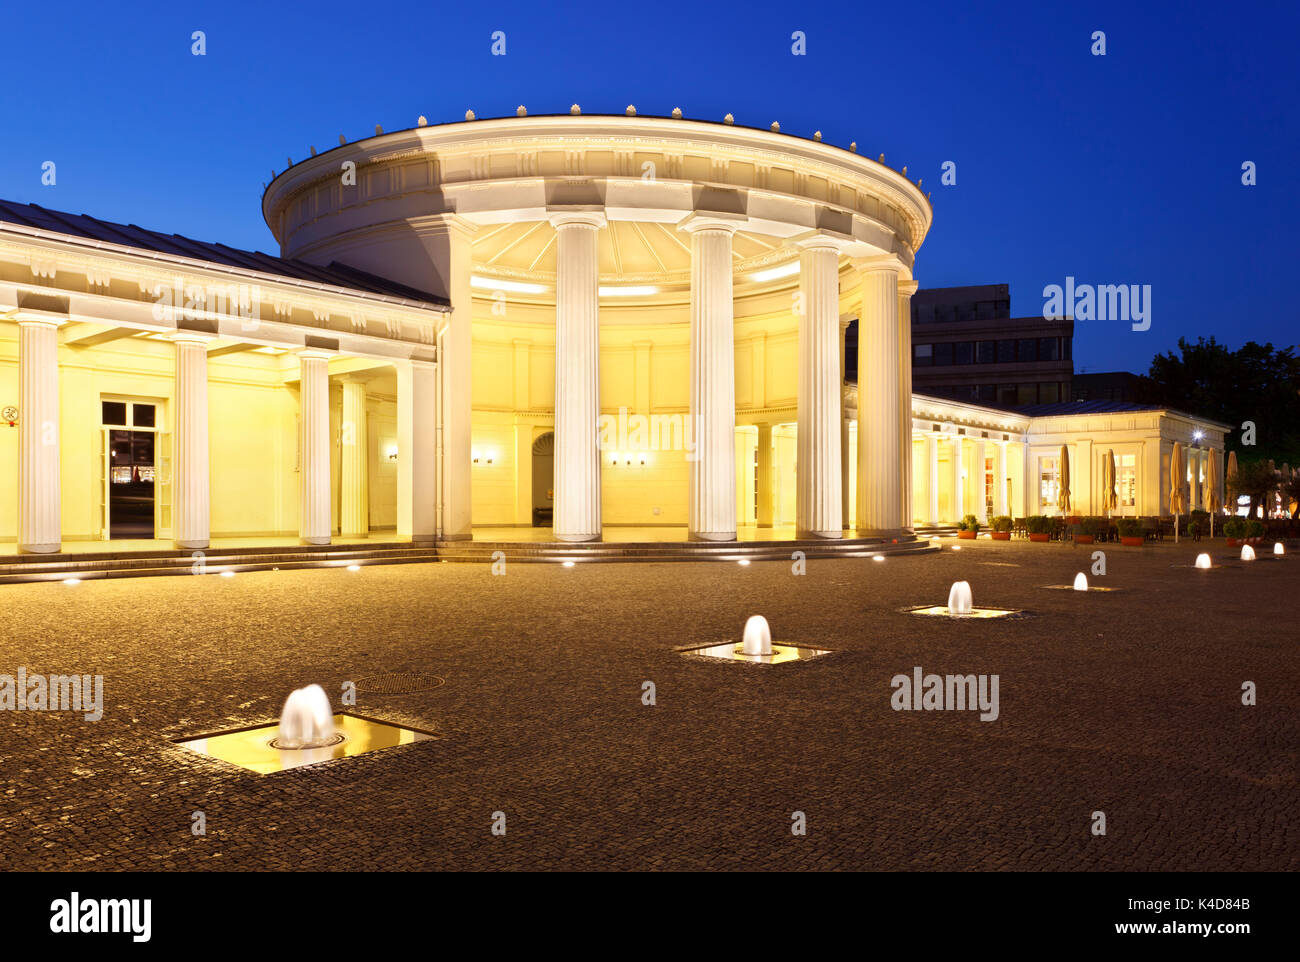 L'Elisenbrunnen célèbre à Aix-la-Chapelle, Allemagne. Éclairé par le ciel bleu nuit. Banque D'Images